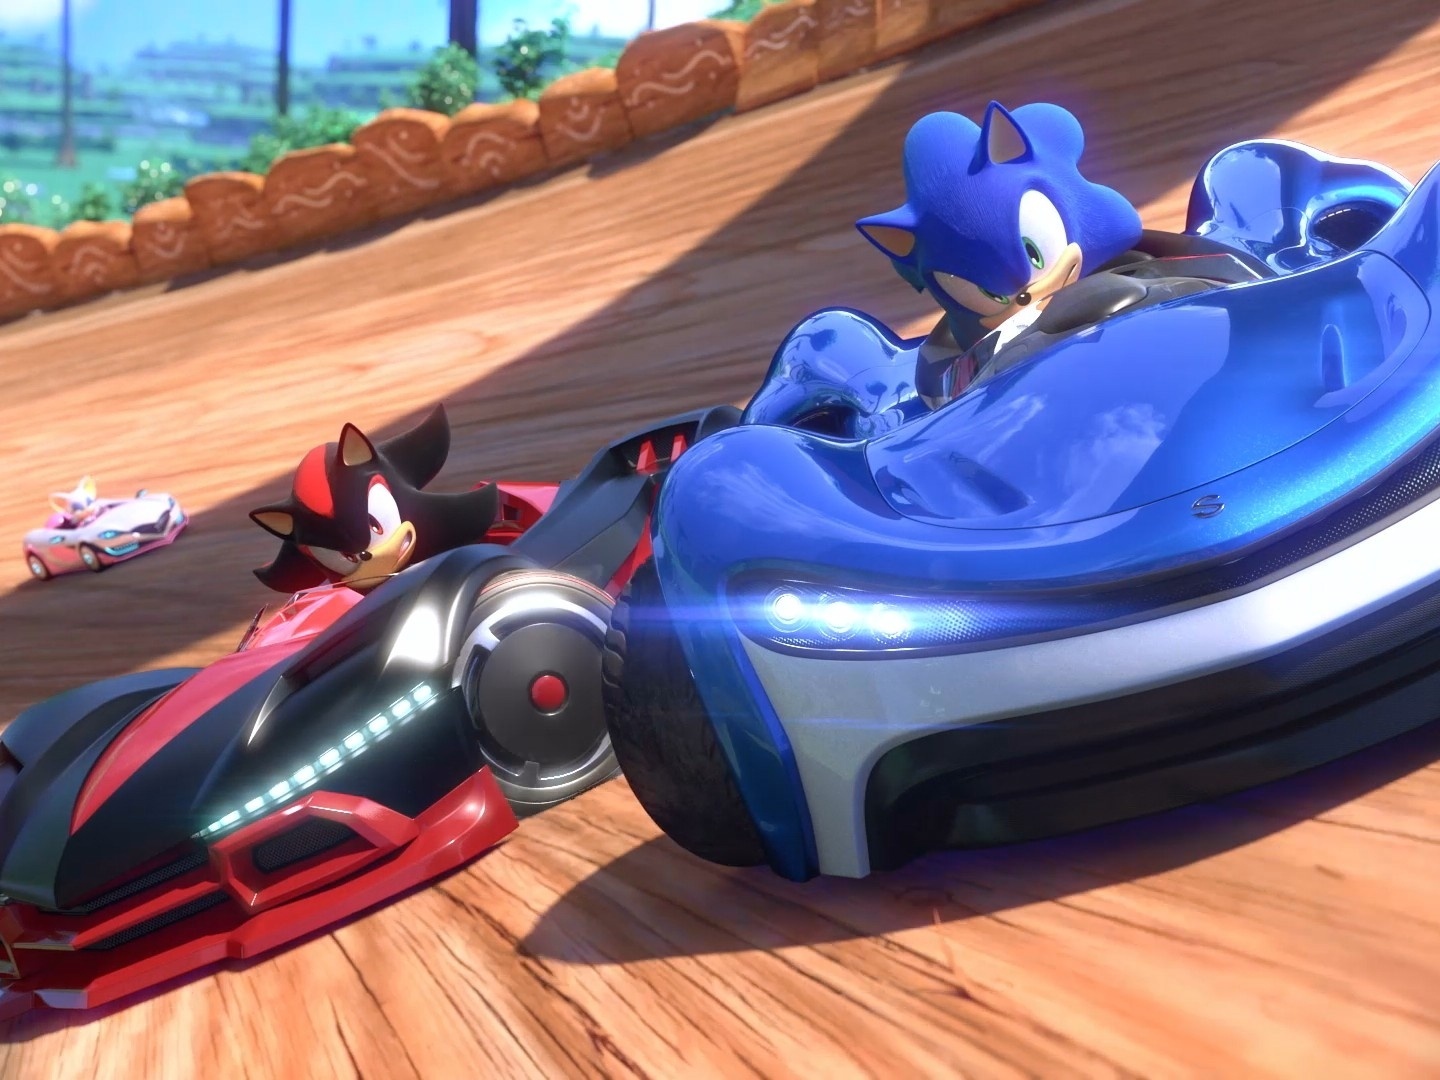 Sonic & Sega All Stars Racing - Xbox 360 em Promoção na Americanas